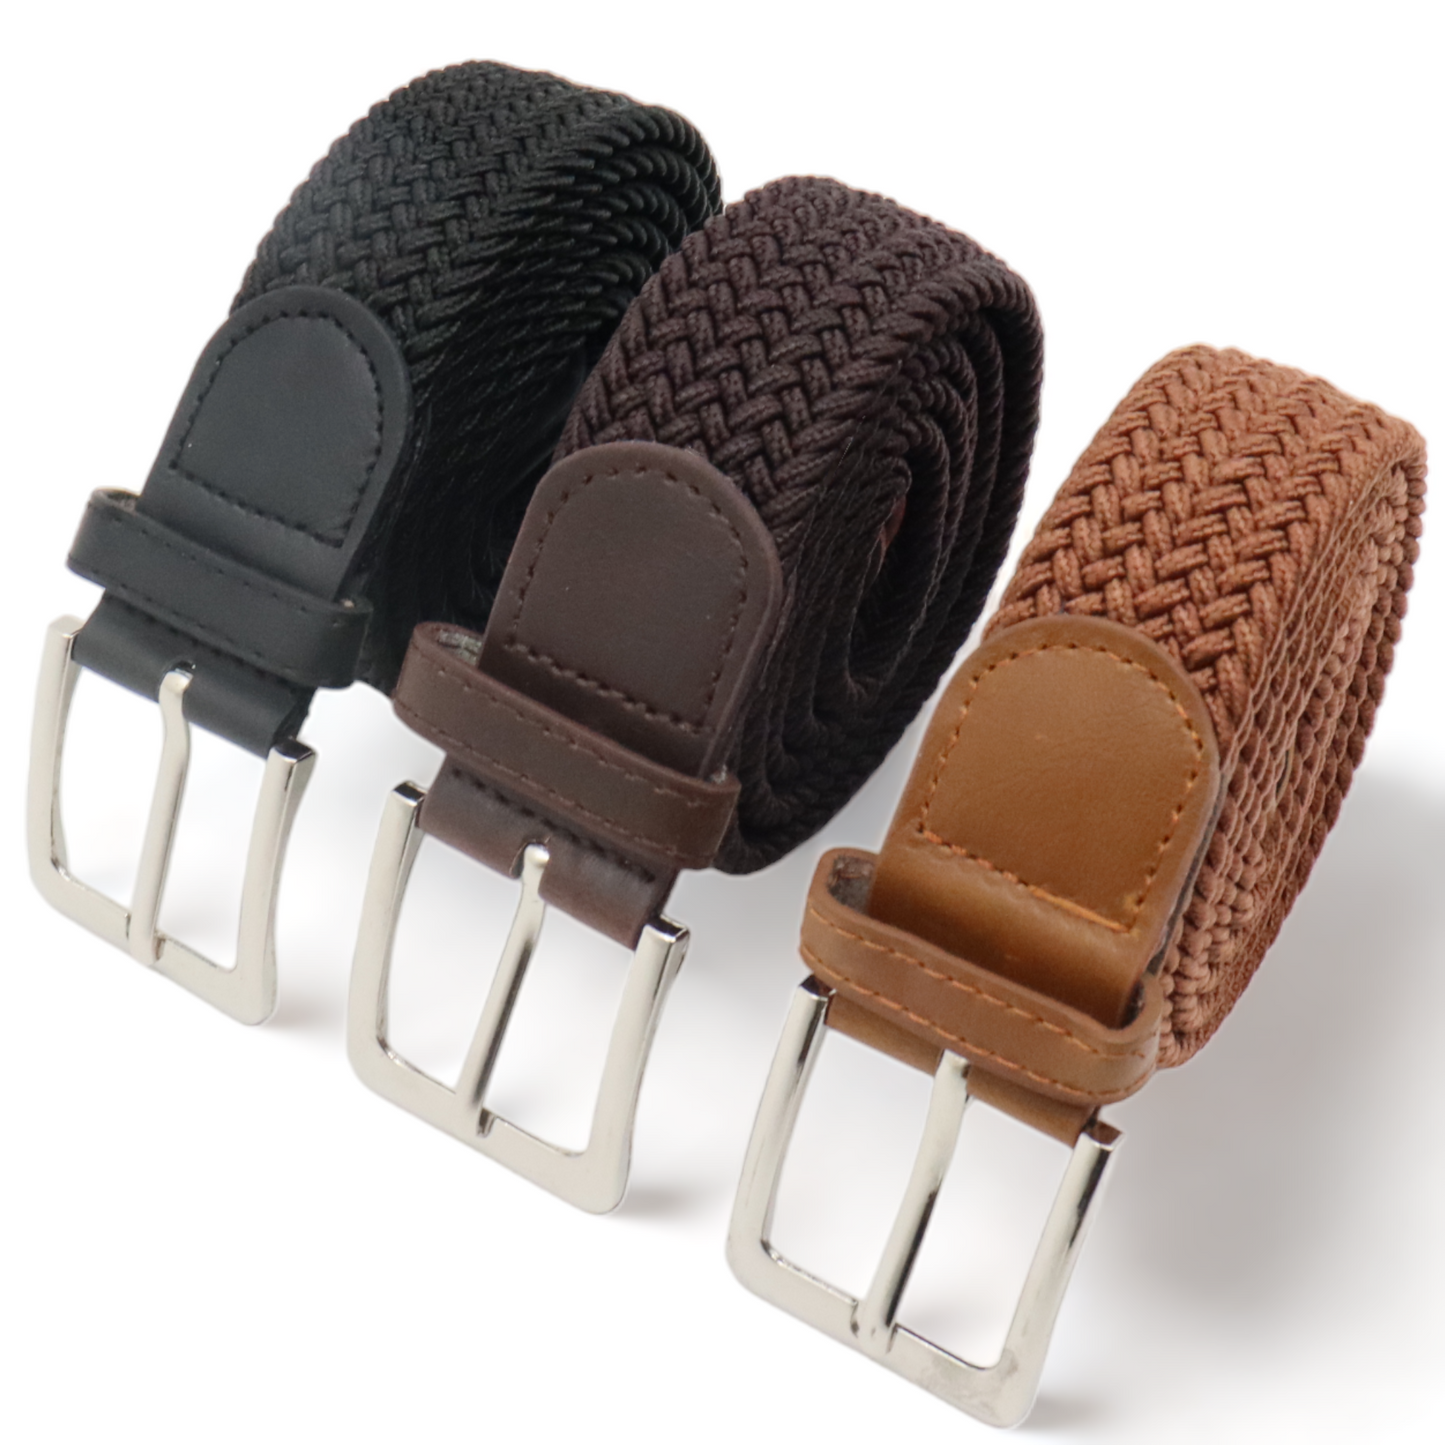 Safekeepers elastische Gürtel – elastischer Gürtel – Stretchgürtel – Gürtel Herren – Gürtel Damen – 3 Stück